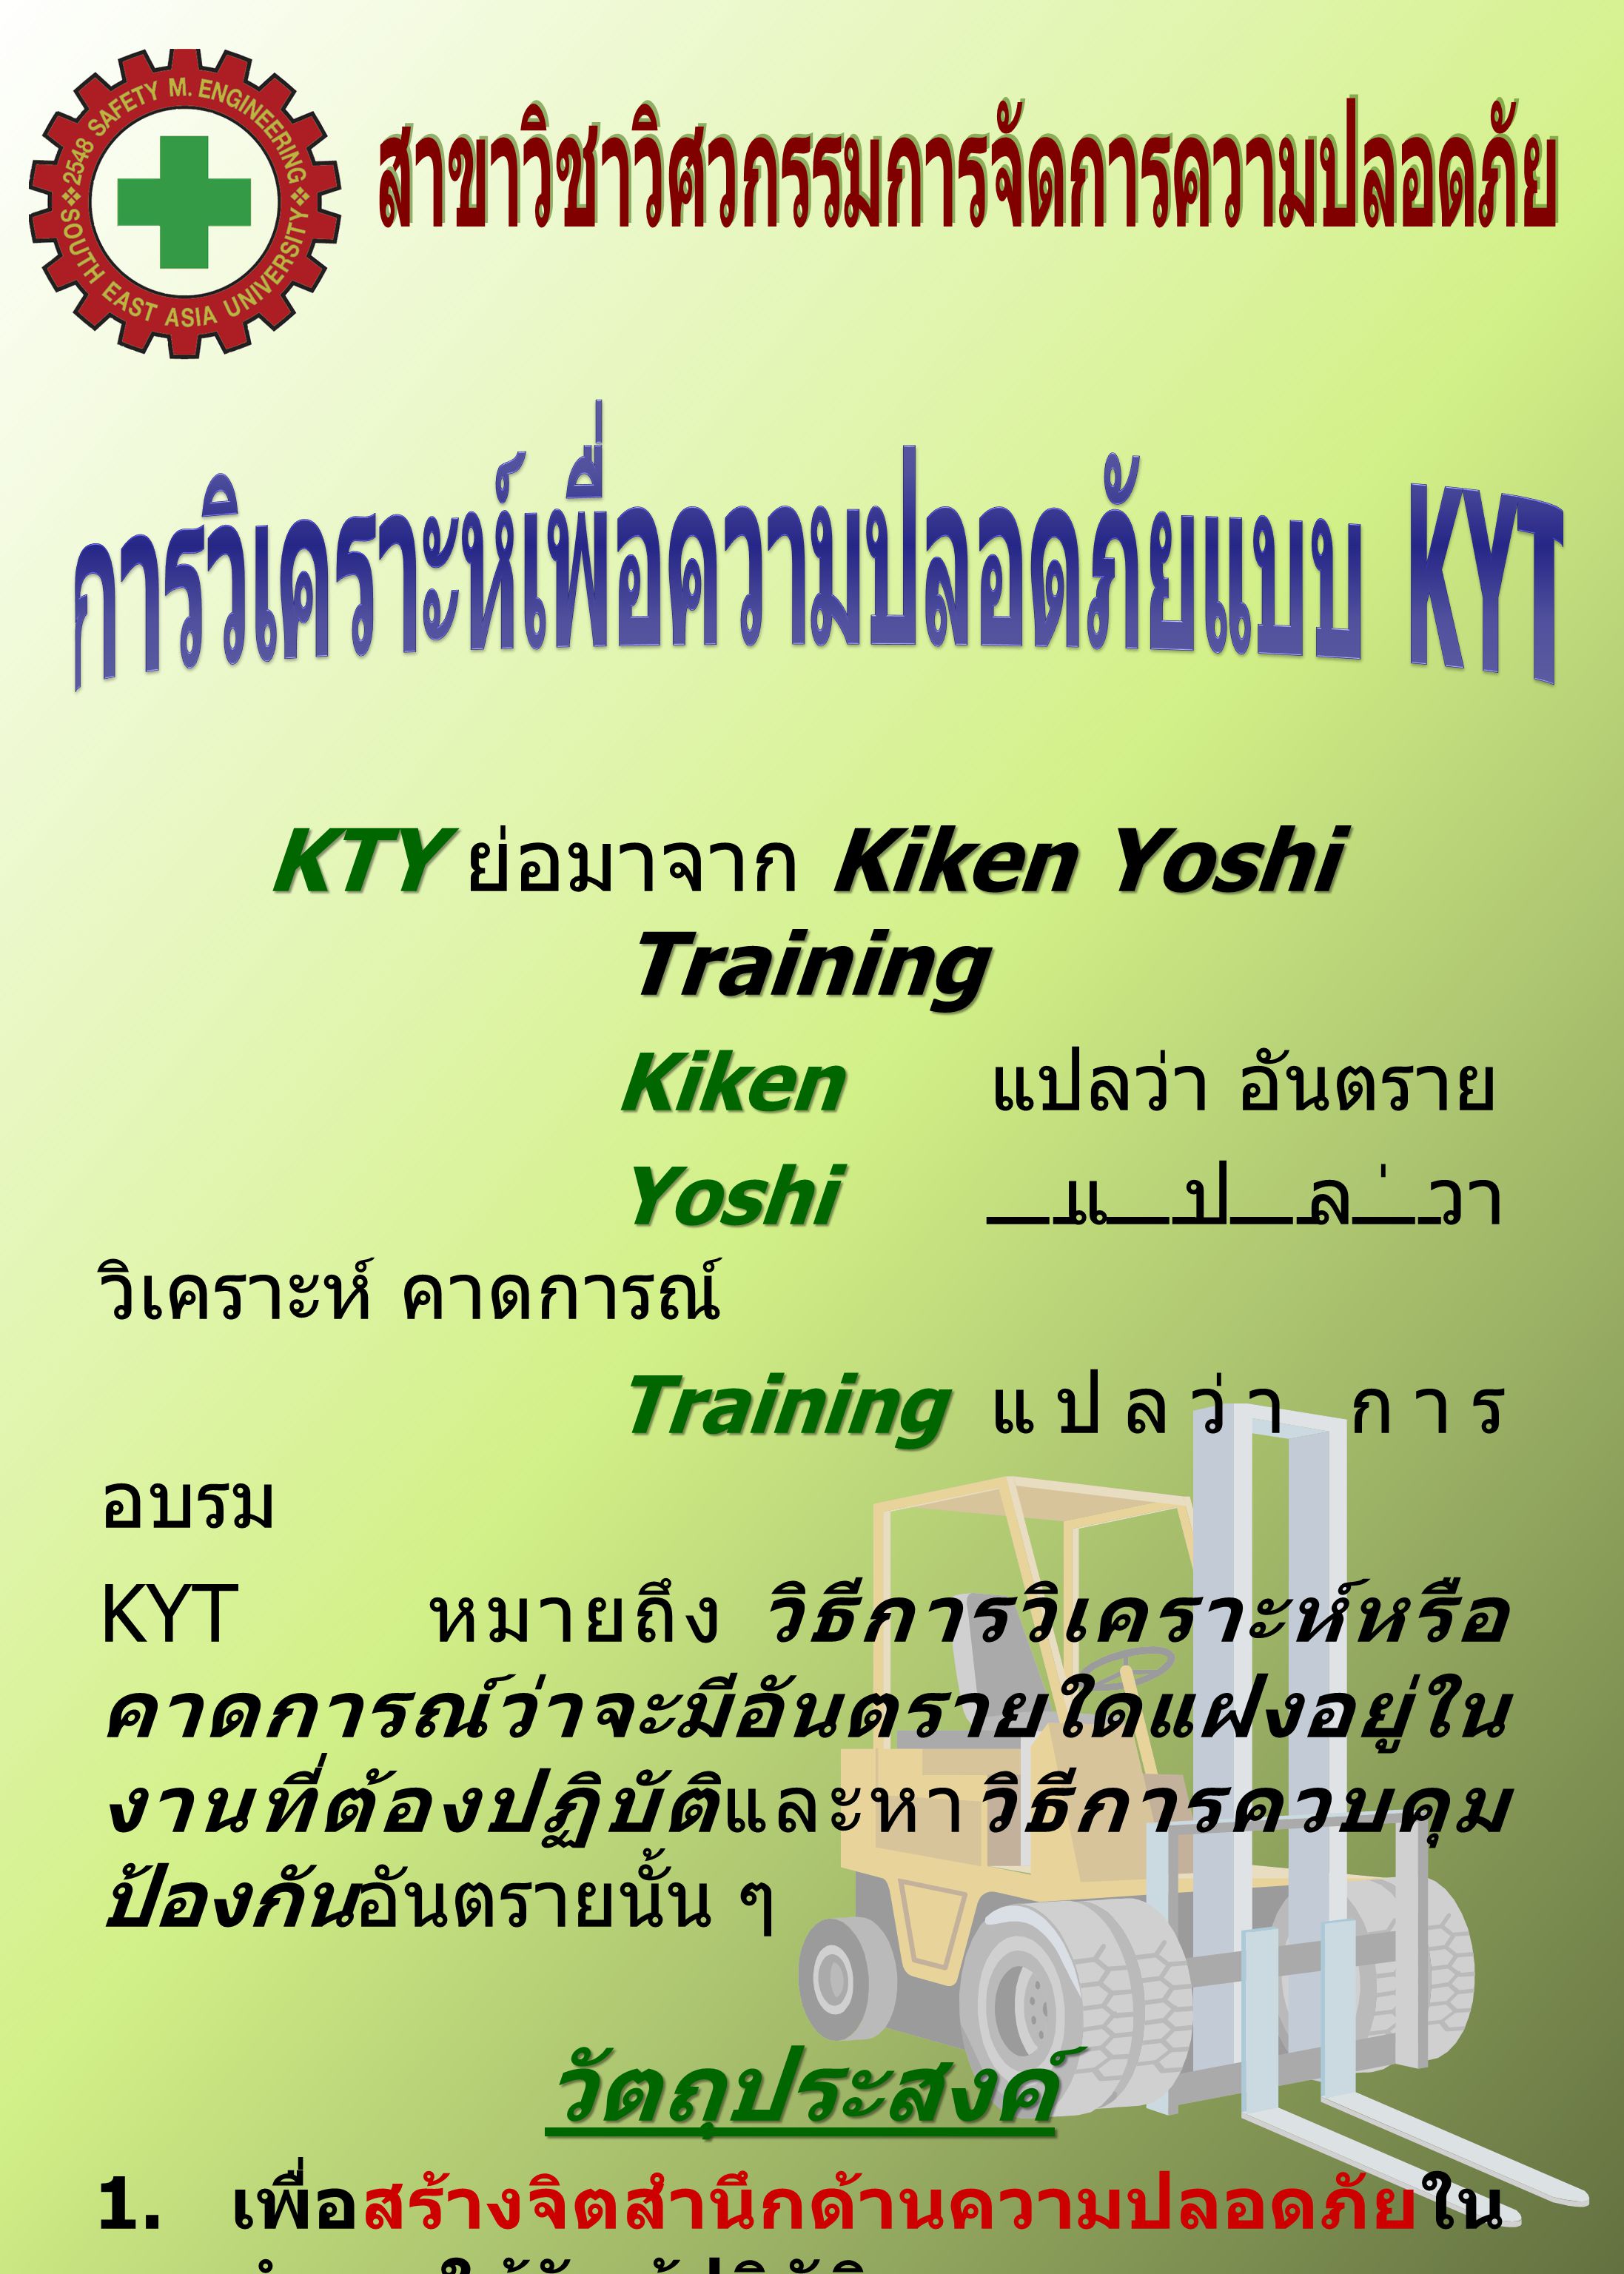 ว ตถ ประสงค Kty ย อมาจาก Kiken Yoshi Training Ppt ดาวน โหลด